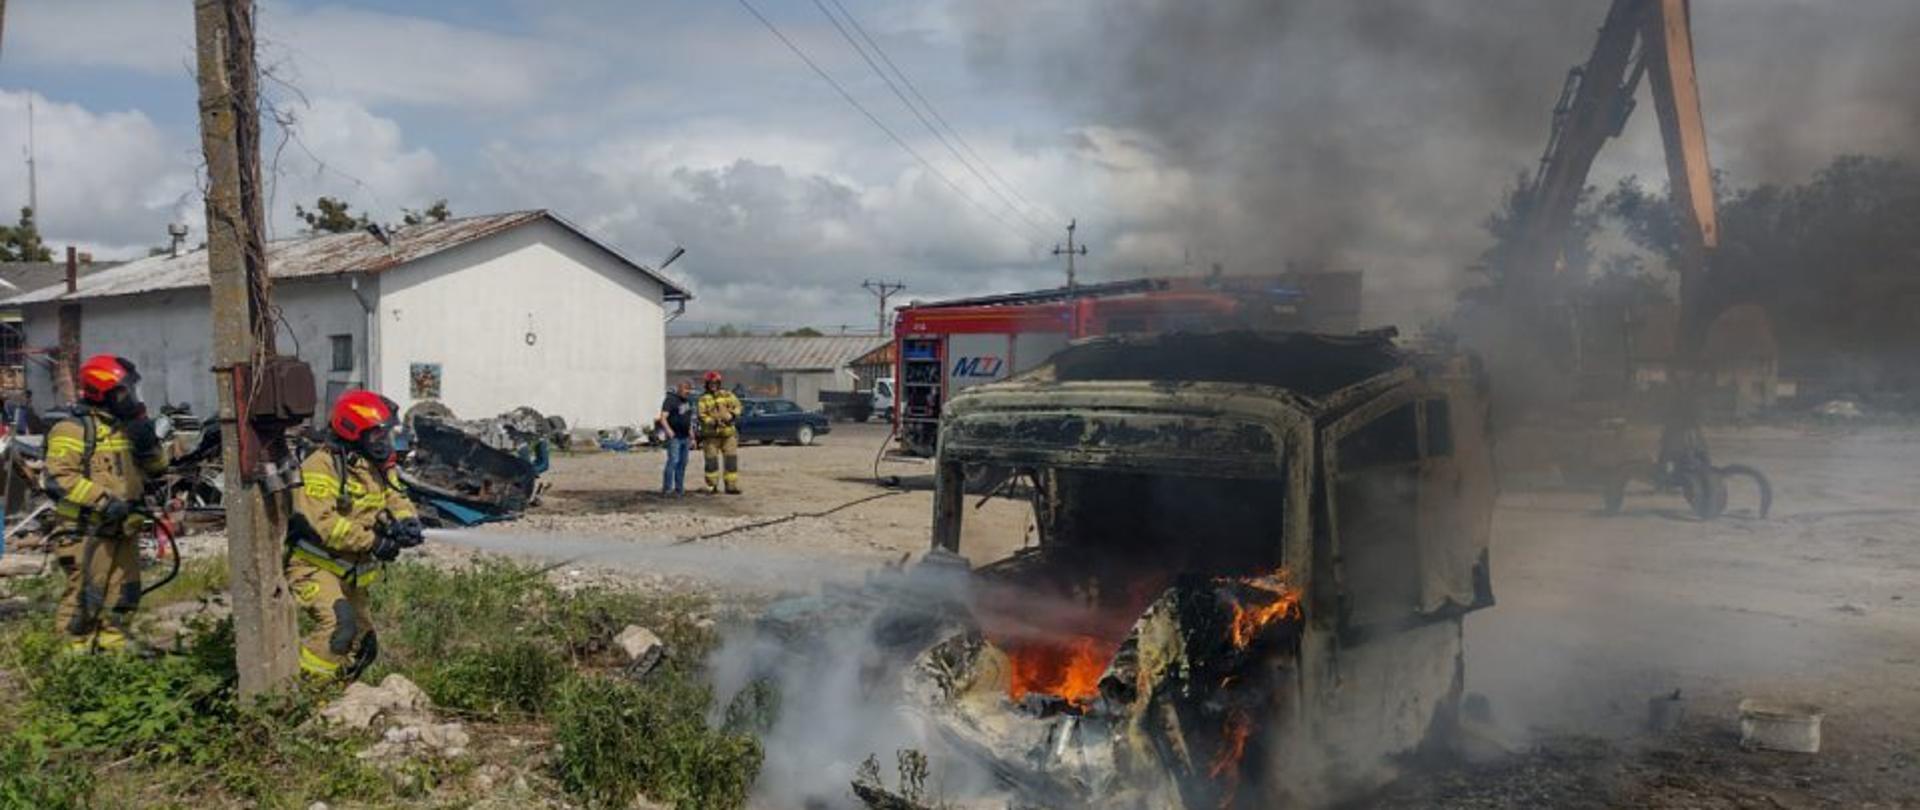 Na placu pali się kabina samochodu ciężarowego, widać płomienie. Z lewej stoi dwóch strażaków w mundurach bojowych i czerwonych hełmach. W tle z tyłu samochód strażacki i budynek. Chmury na niebieskim niebie.